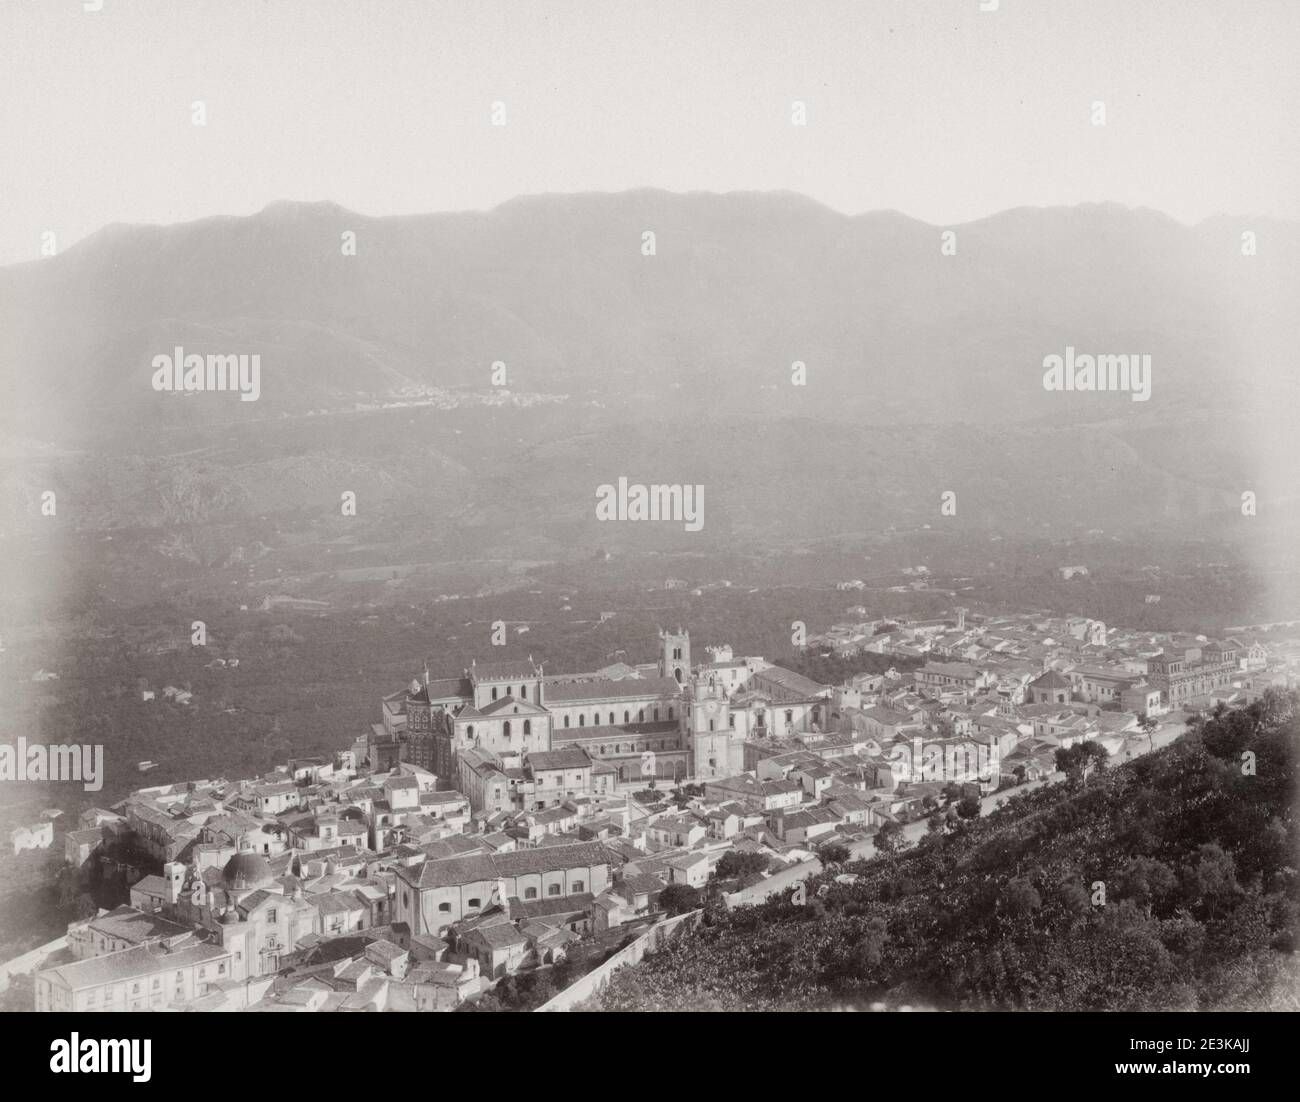 Oldtimer-Foto aus dem 19. Jahrhundert: Panorama von Monreale, einer Stadt und Gemeinde in der Metropolstadt Palermo in Sizilien, Süditalien. Es liegt am Hang des Monte Caputo Stockfoto